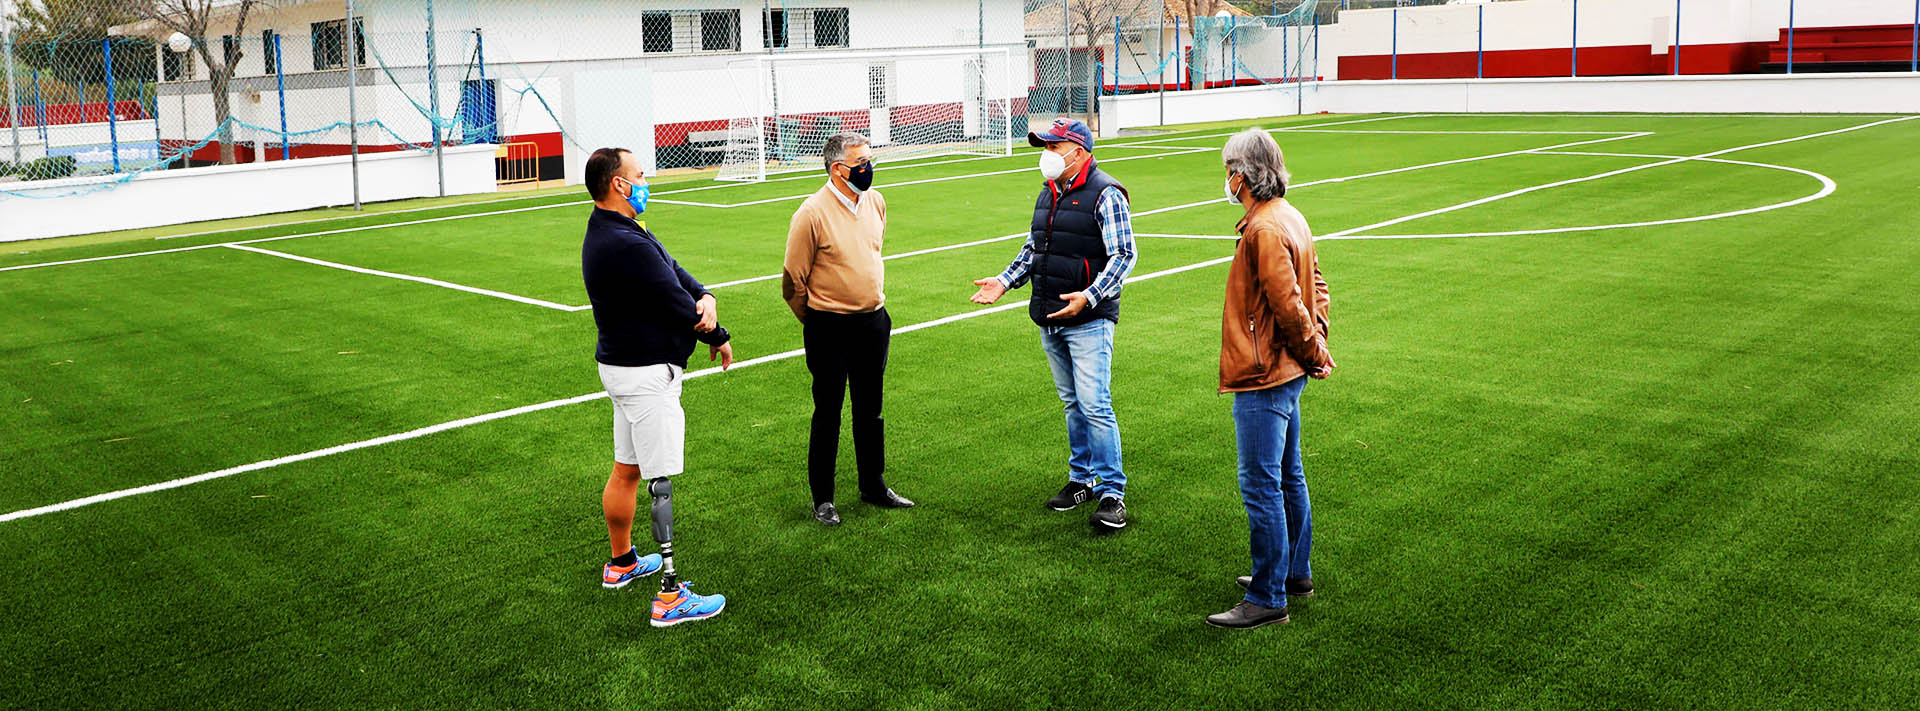 El fútbol 7 estrena césped y nuevo sistema de riego en San Pedro Alcántara